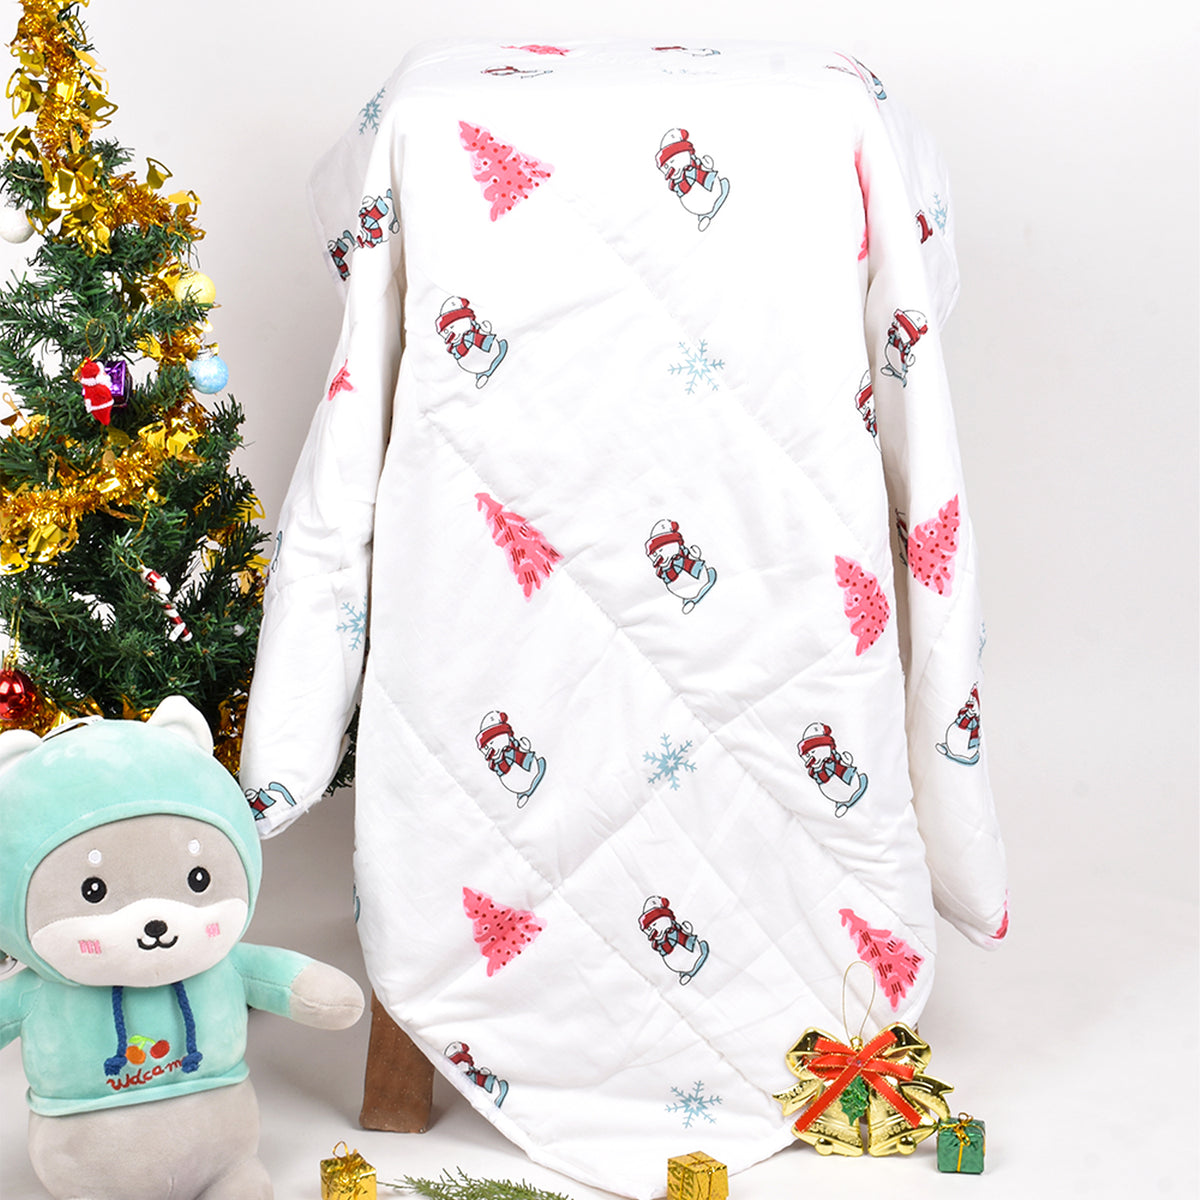 Baby Ac Quilt Blanket cum Bedspread- 0-3 Years - 100*120 cm - Snowman